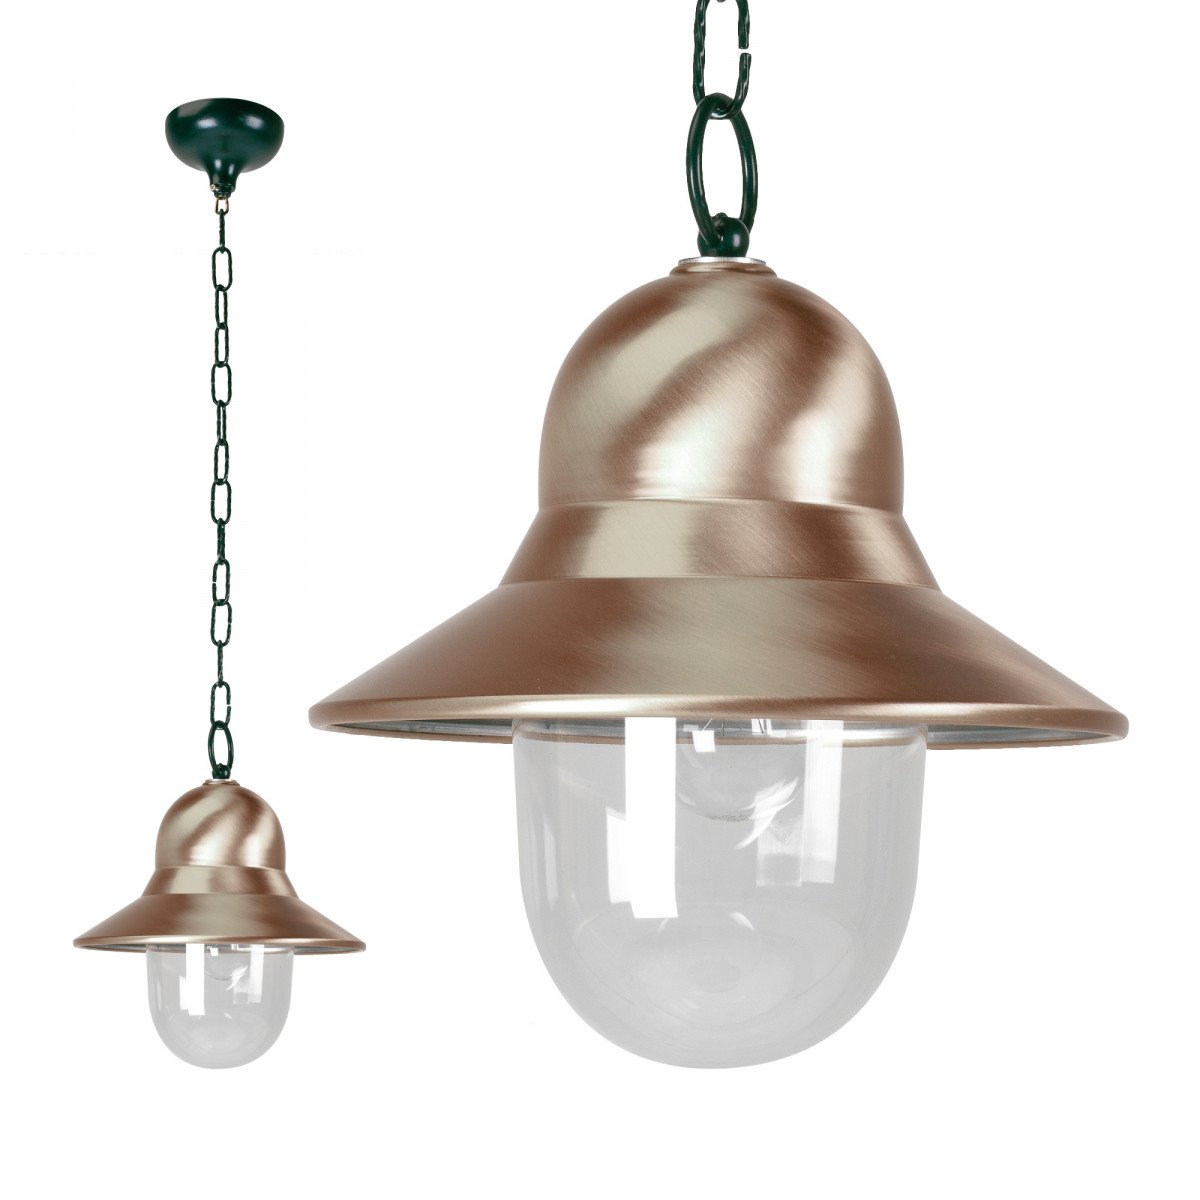 Lampe d'extérieur suspendue à chaîne Toscane (5109)